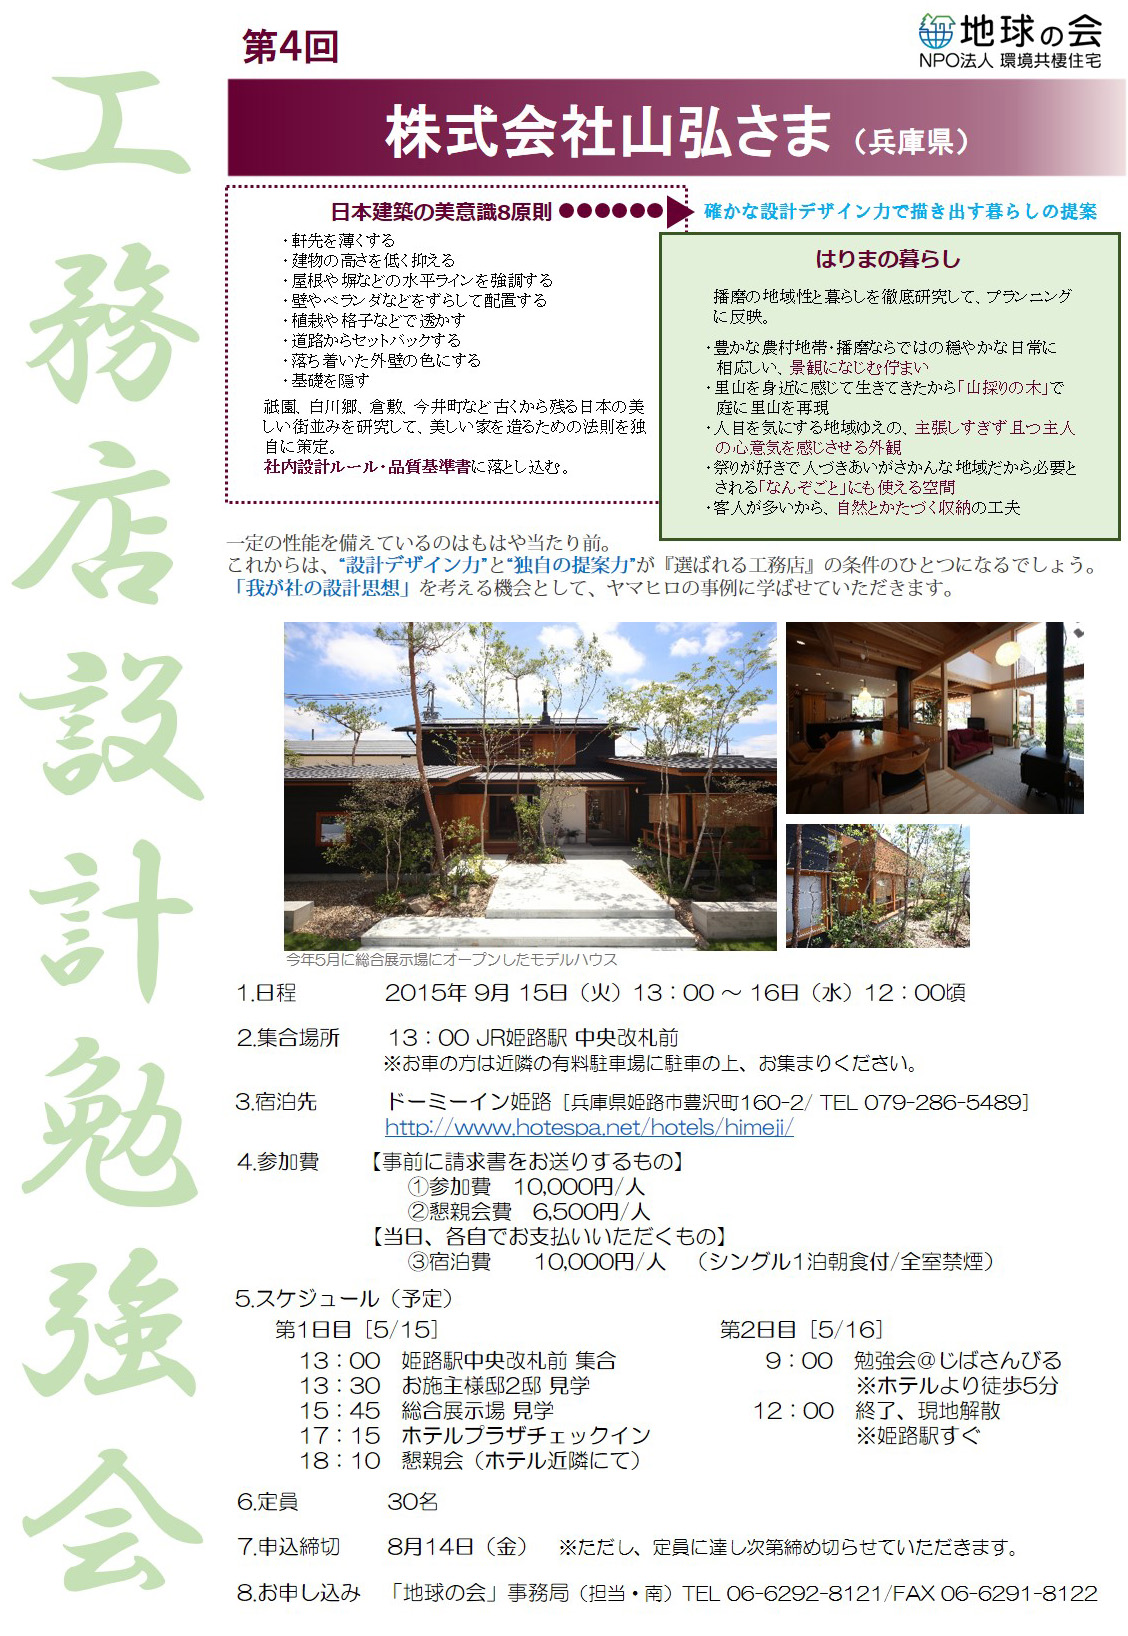 http://www.chikyunokai.com/member/files/koumutensekkei_yamahiro.jpg